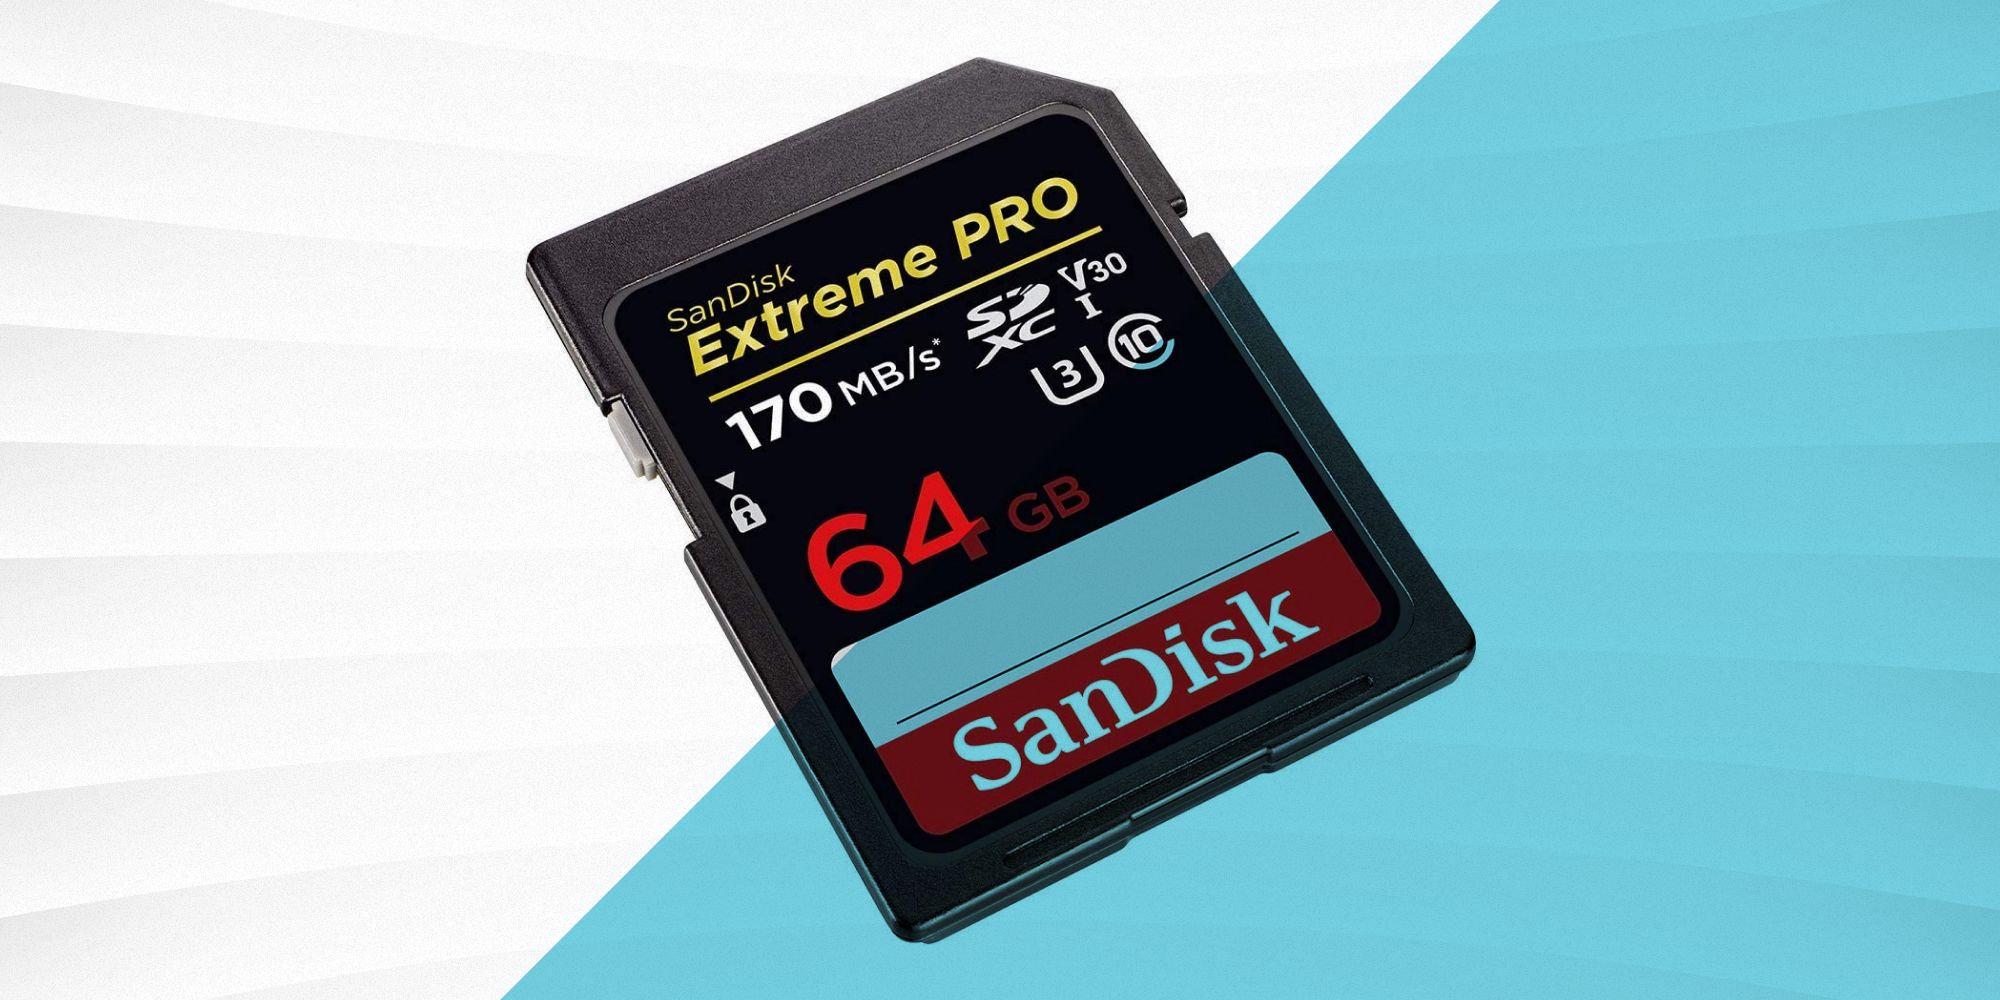 Carte mémoire Micro SD SanDisk Classe 10 - 32 GO - PopSmart